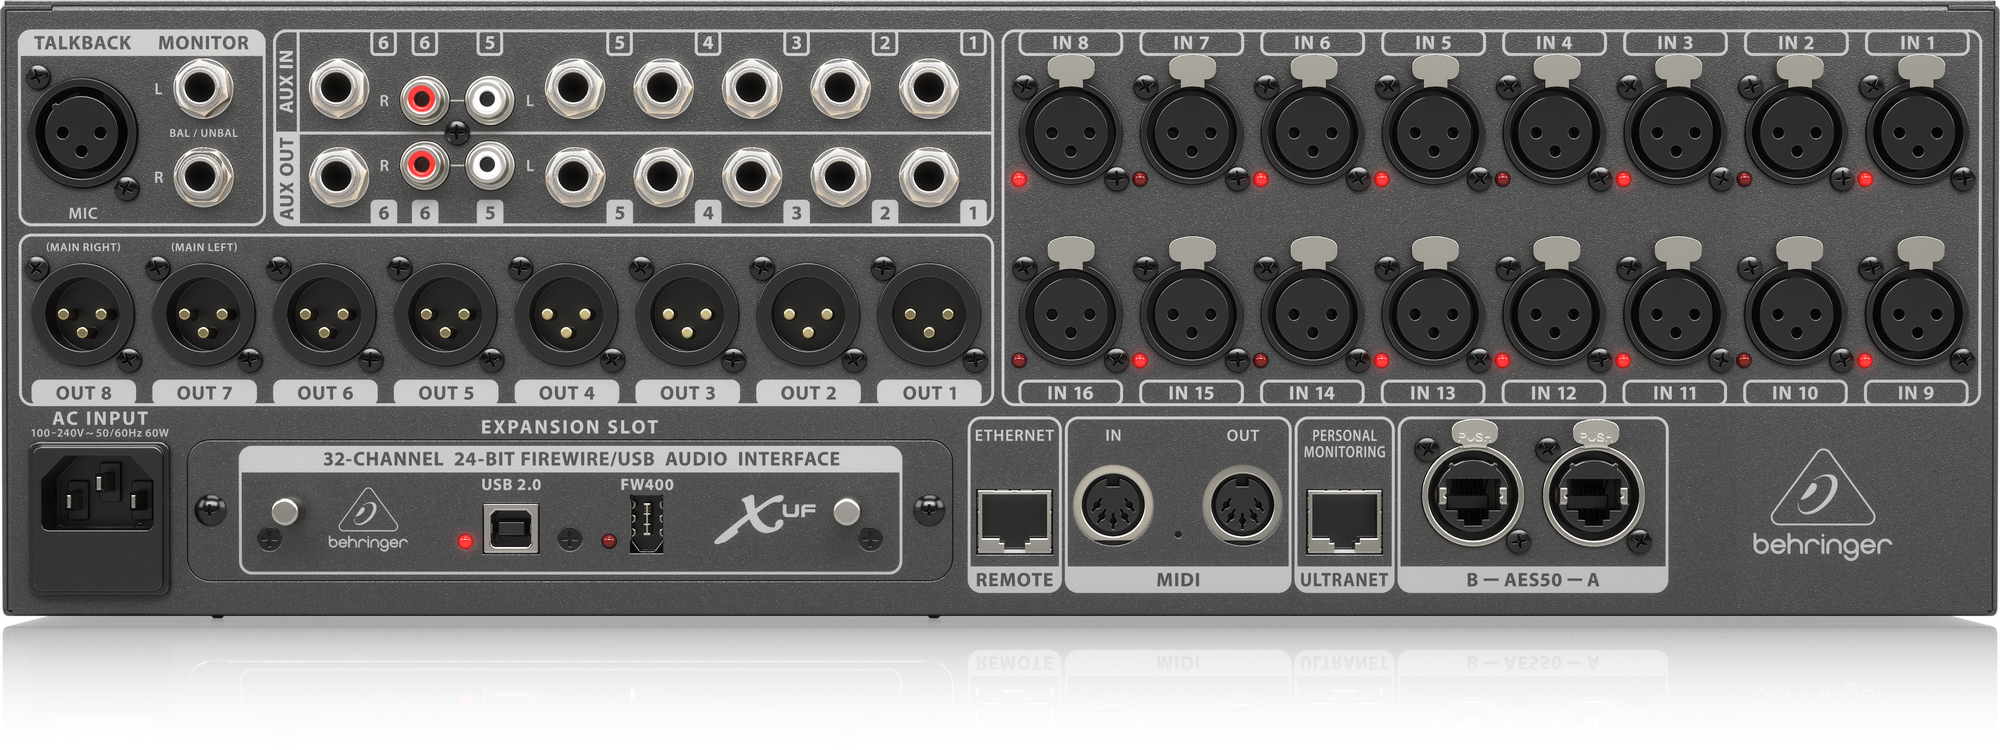 behringer x32 rack 40 channel rackmount digital mixer